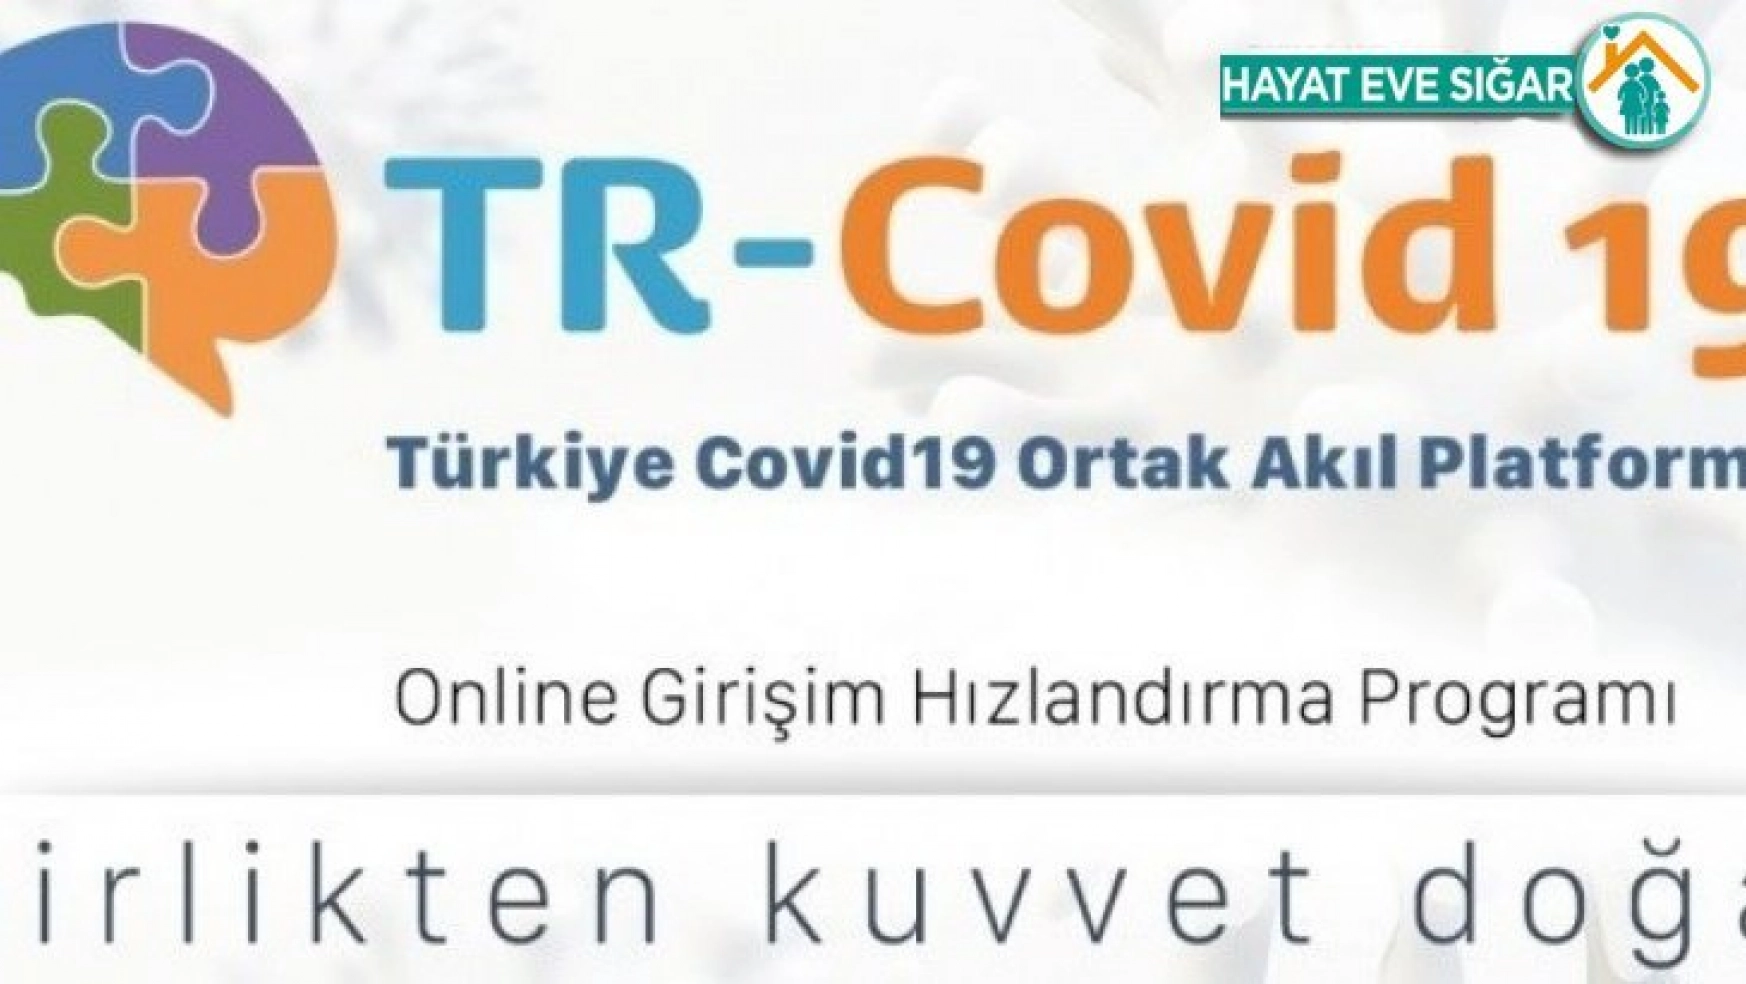 Türkiye Covid-19 Ortak Akıl Platformu tanıtımını gerçekleştirdi